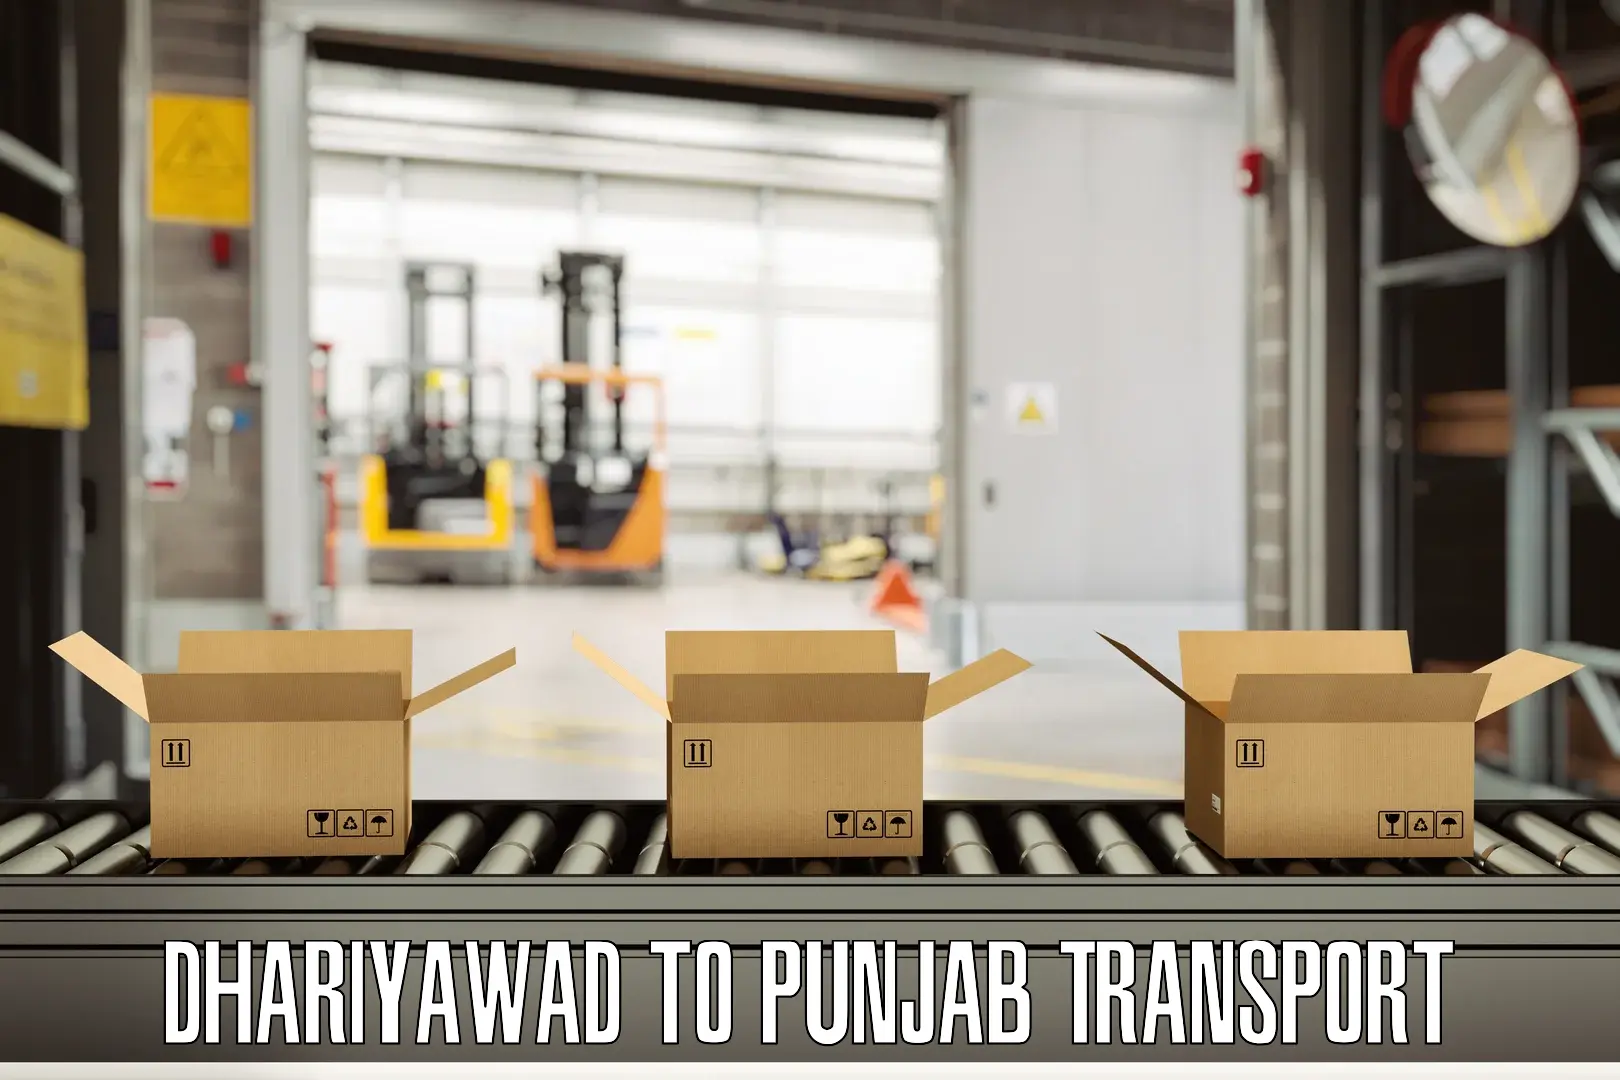 Part load transport service in India Dhariyawad to Punjab